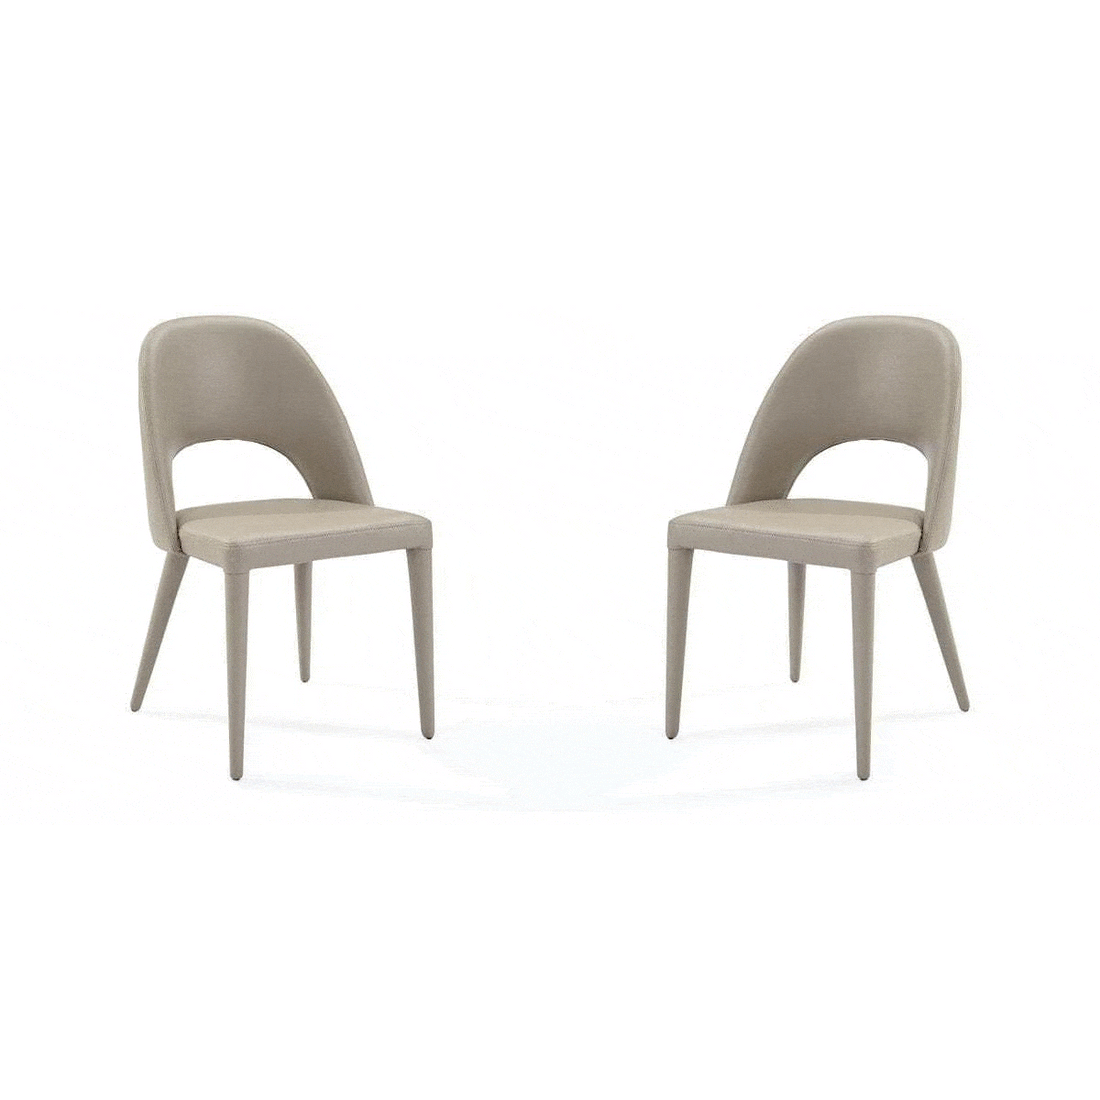 Van Dining Chair - Dark Marble - Set of 2